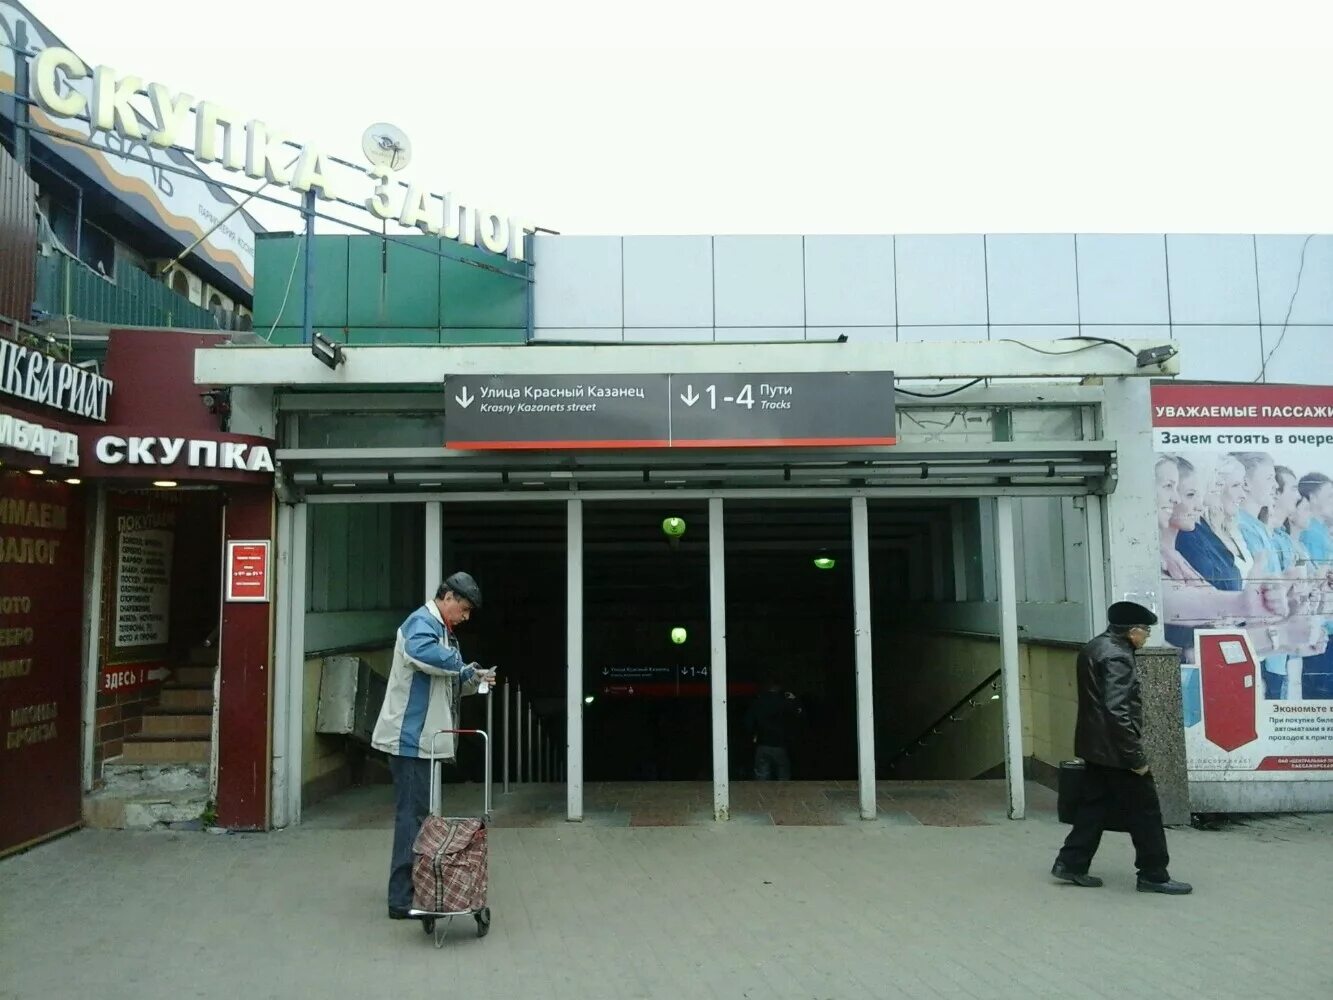 Выхино платформа 3 путь 3. Железнодорожная станция Выхино. Железнодорожная станция Выхино, Москва. Железнодорожная платформа Выхино.